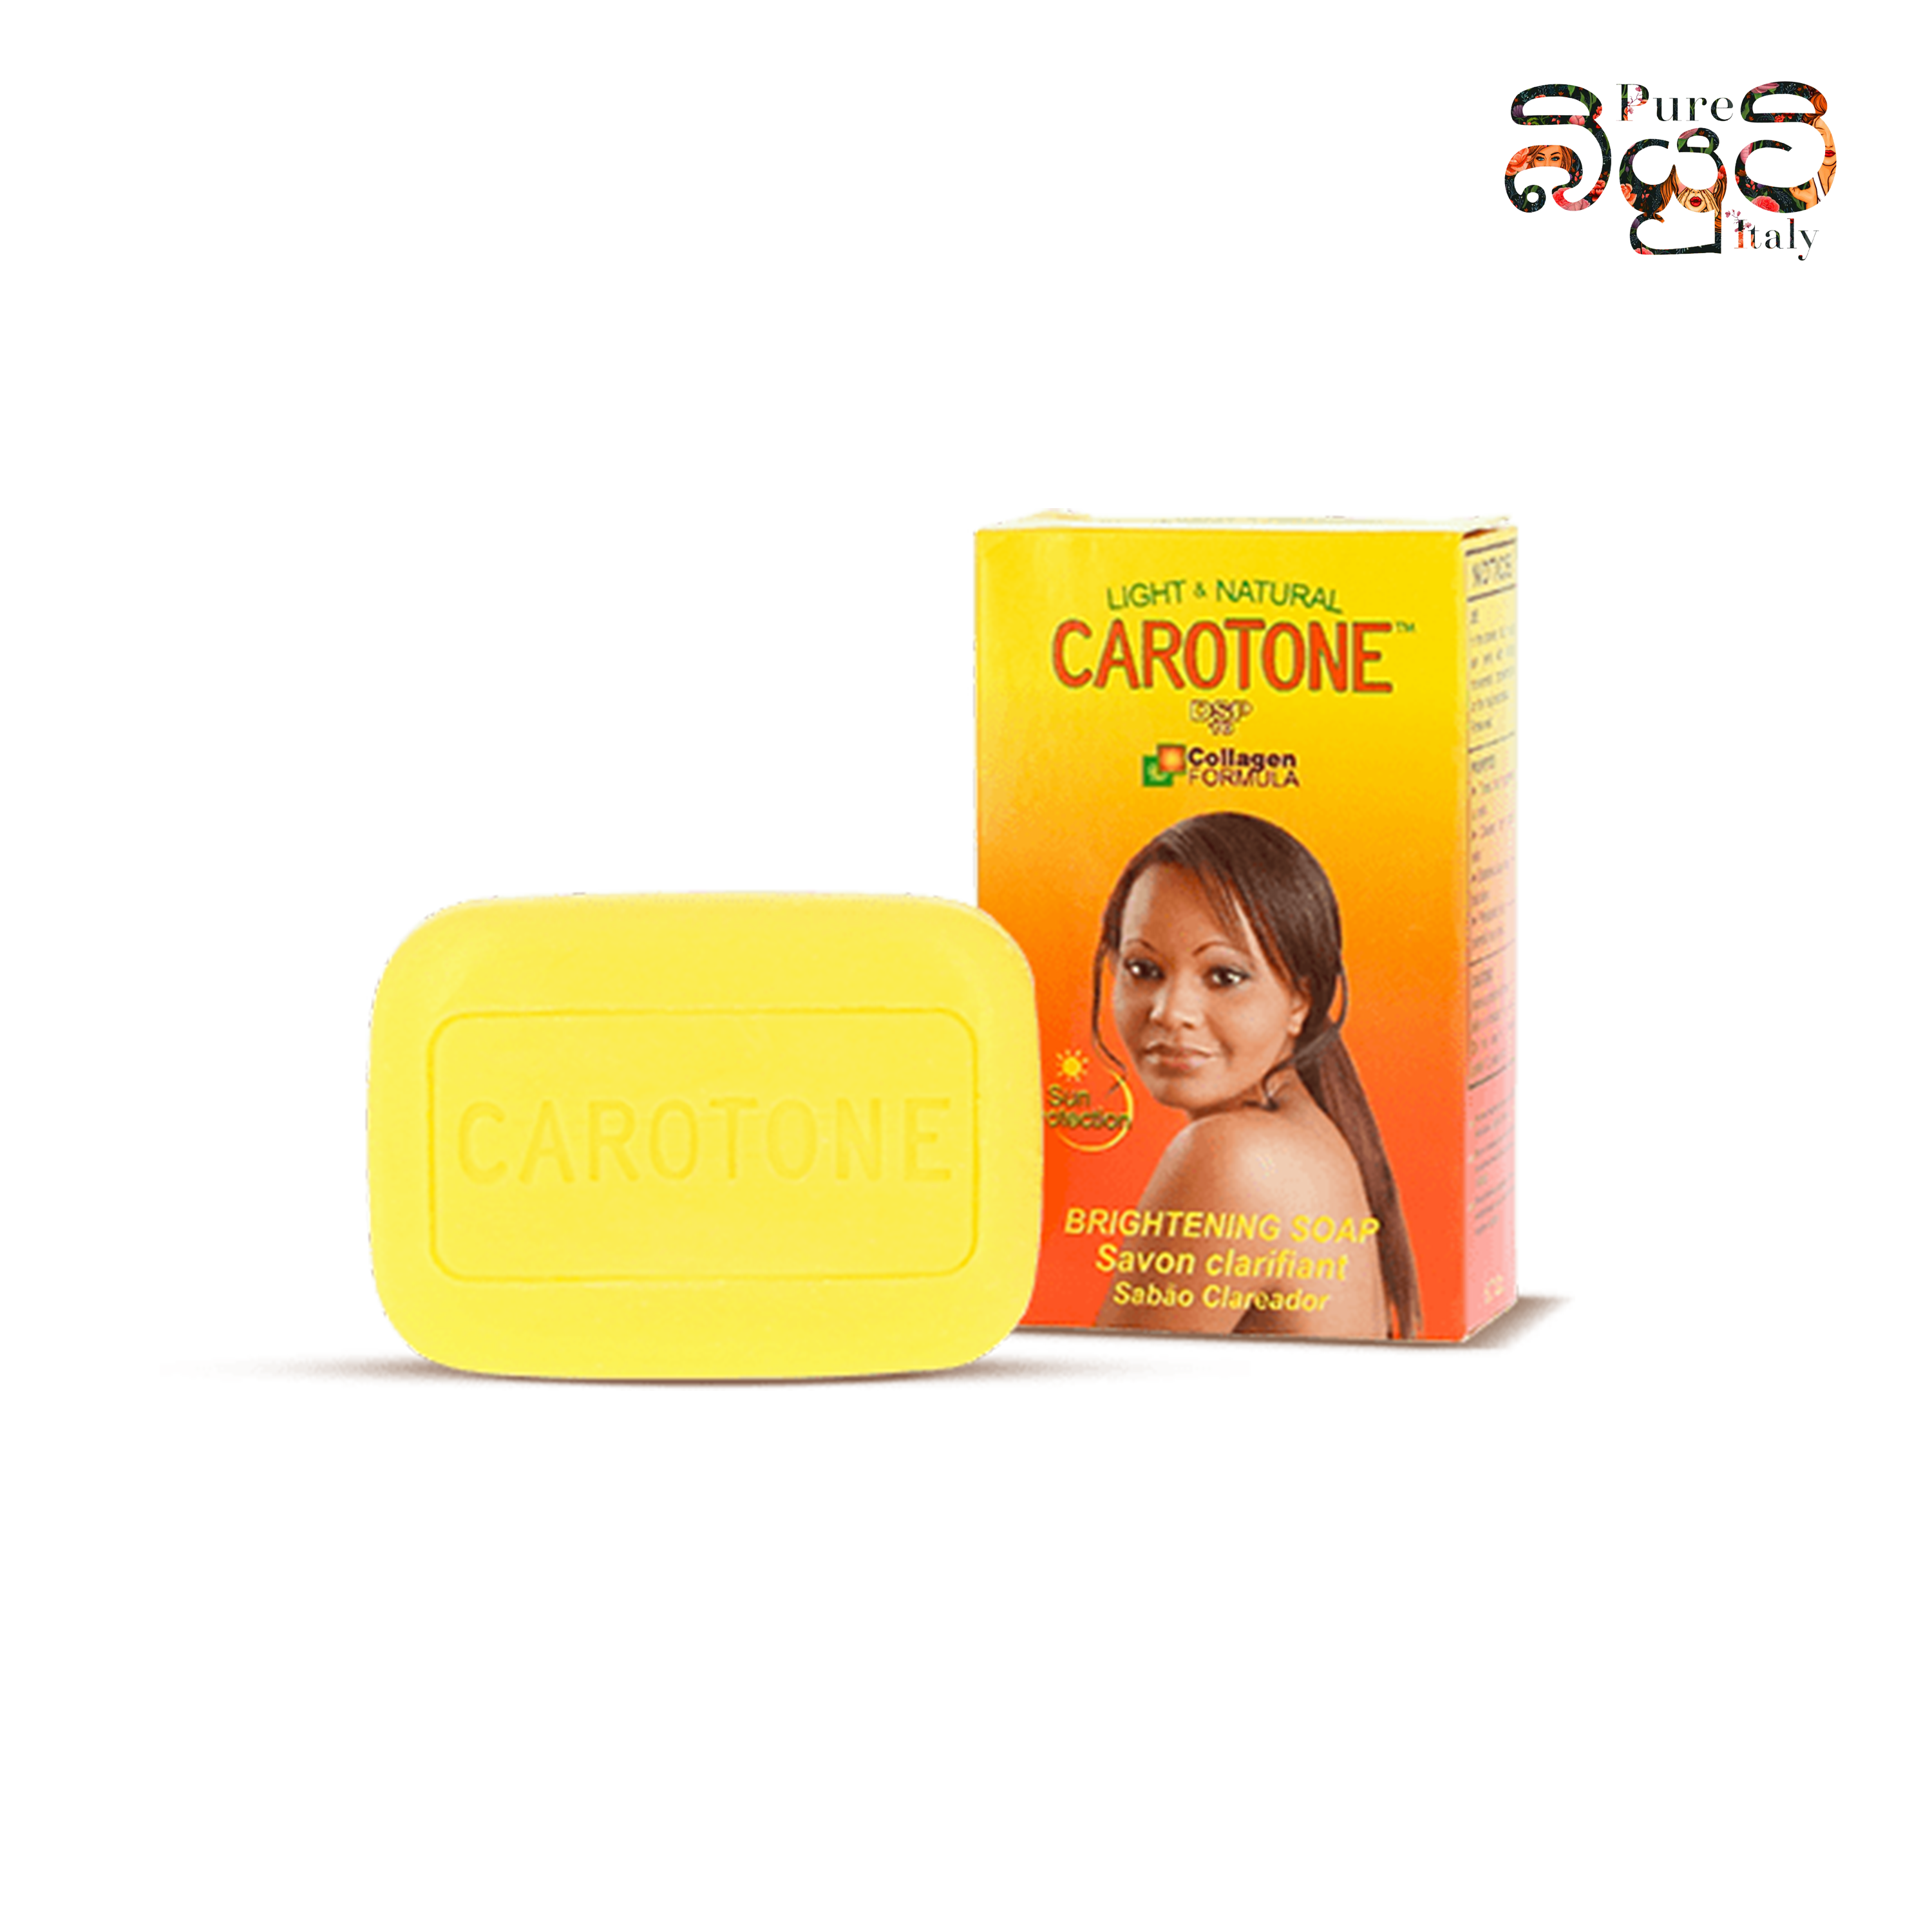 Carotone Brightening & Exfoliating Soap